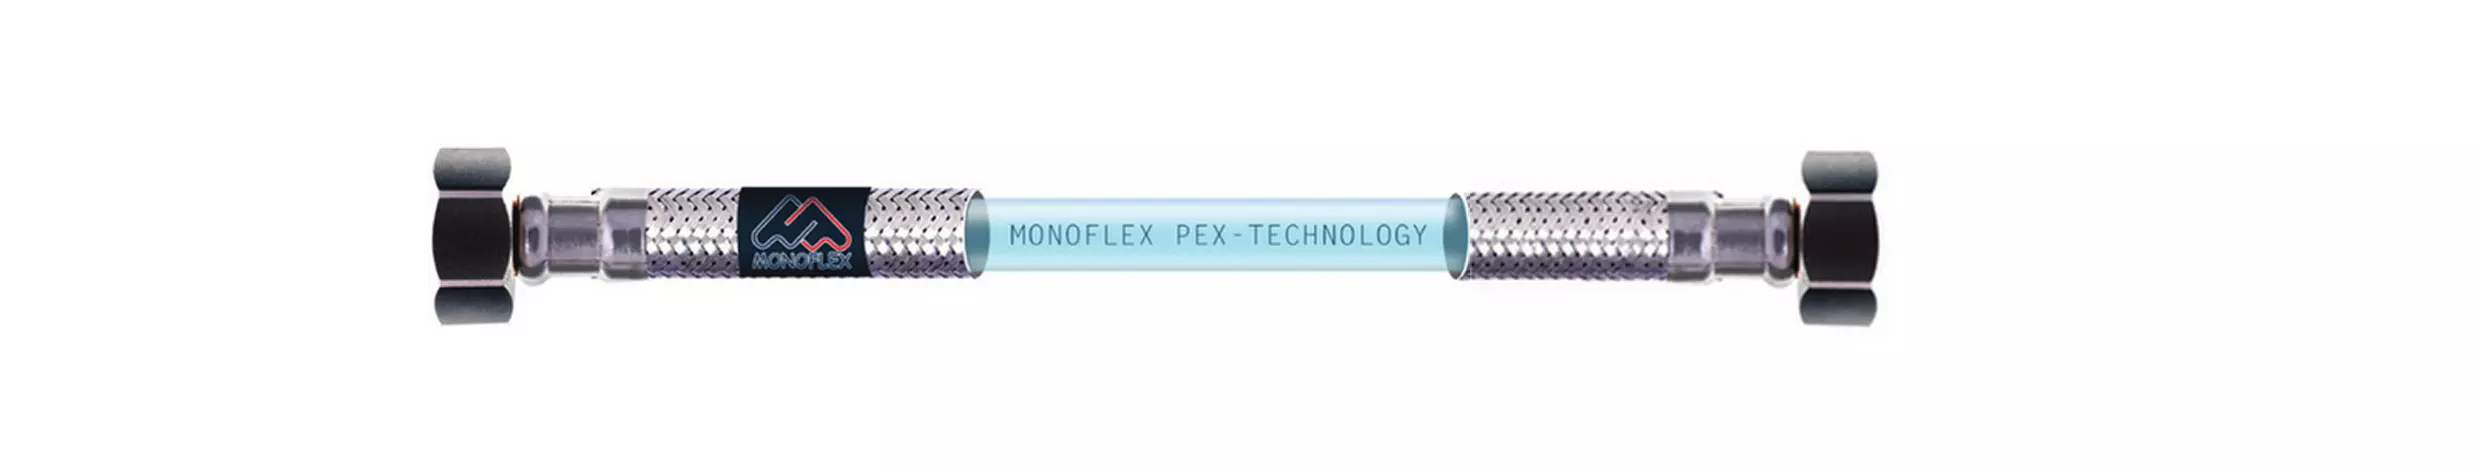 Подводка для воды Premium PEX-TECHNOLOGY 12мм 1/2 в-в 40 см Monoflex Н01518